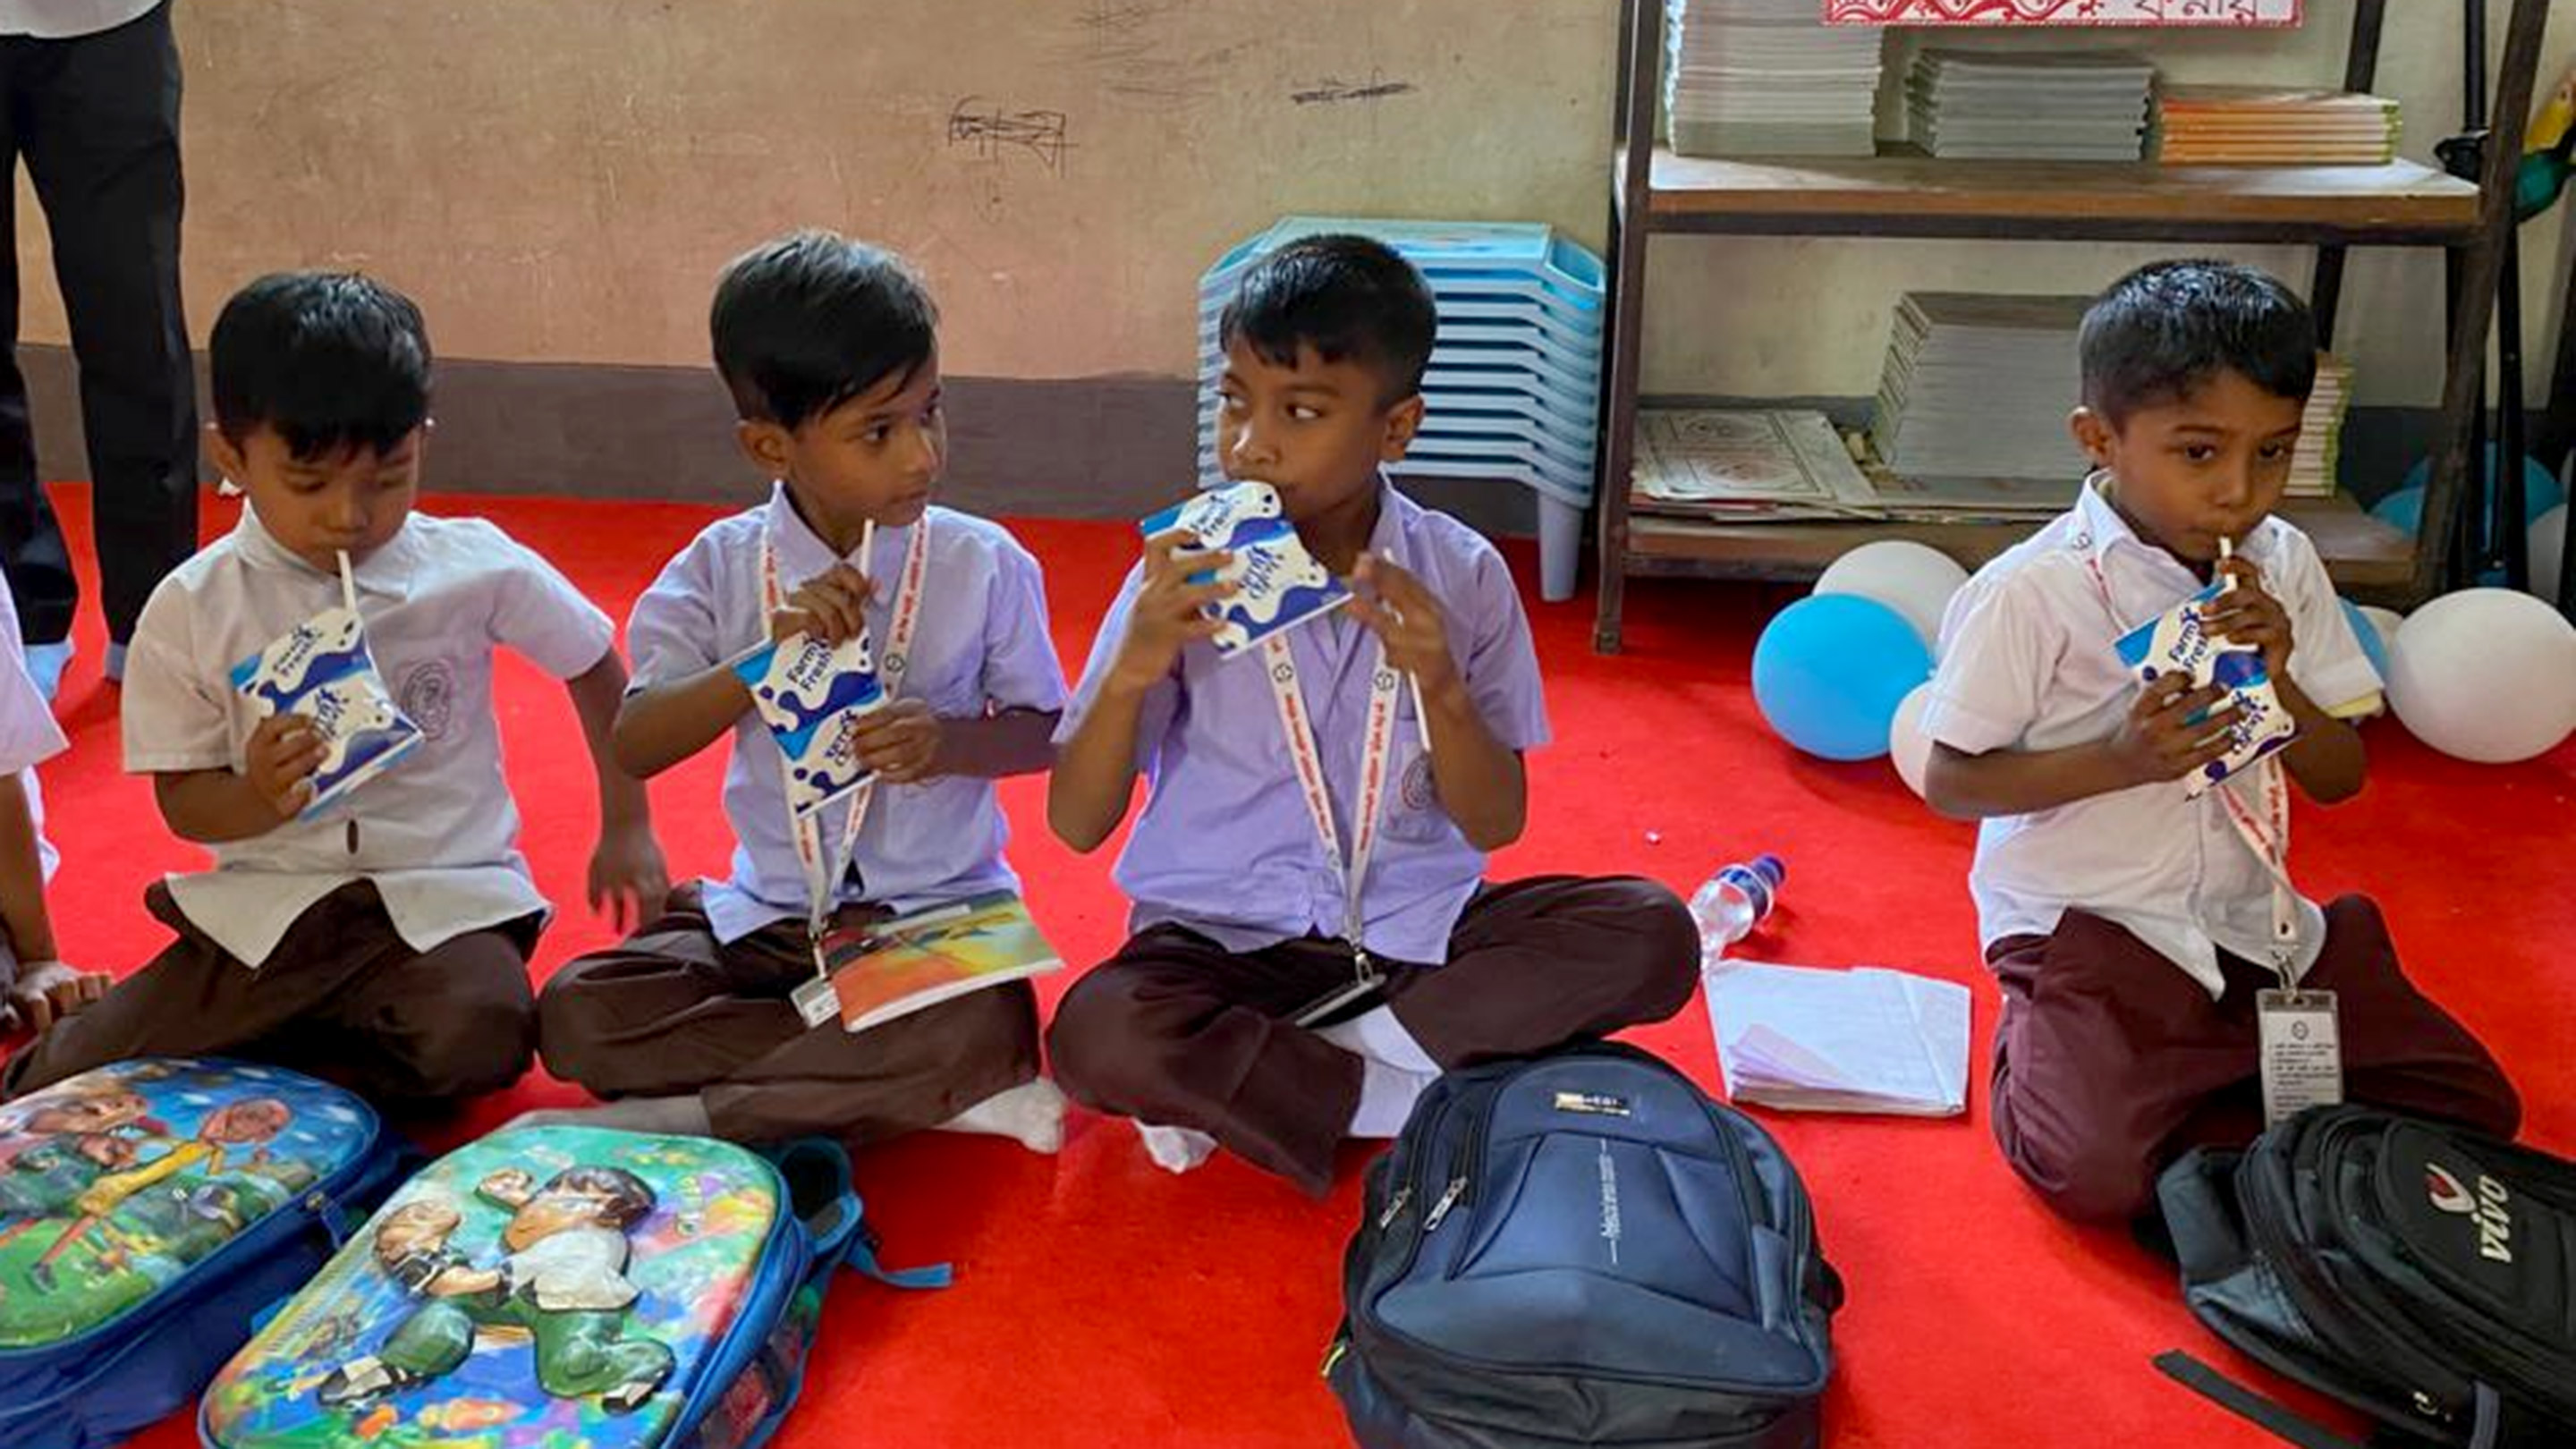 Écoliers au Bangladesh, lait dans des emballages carton aseptiques Tetra Fino